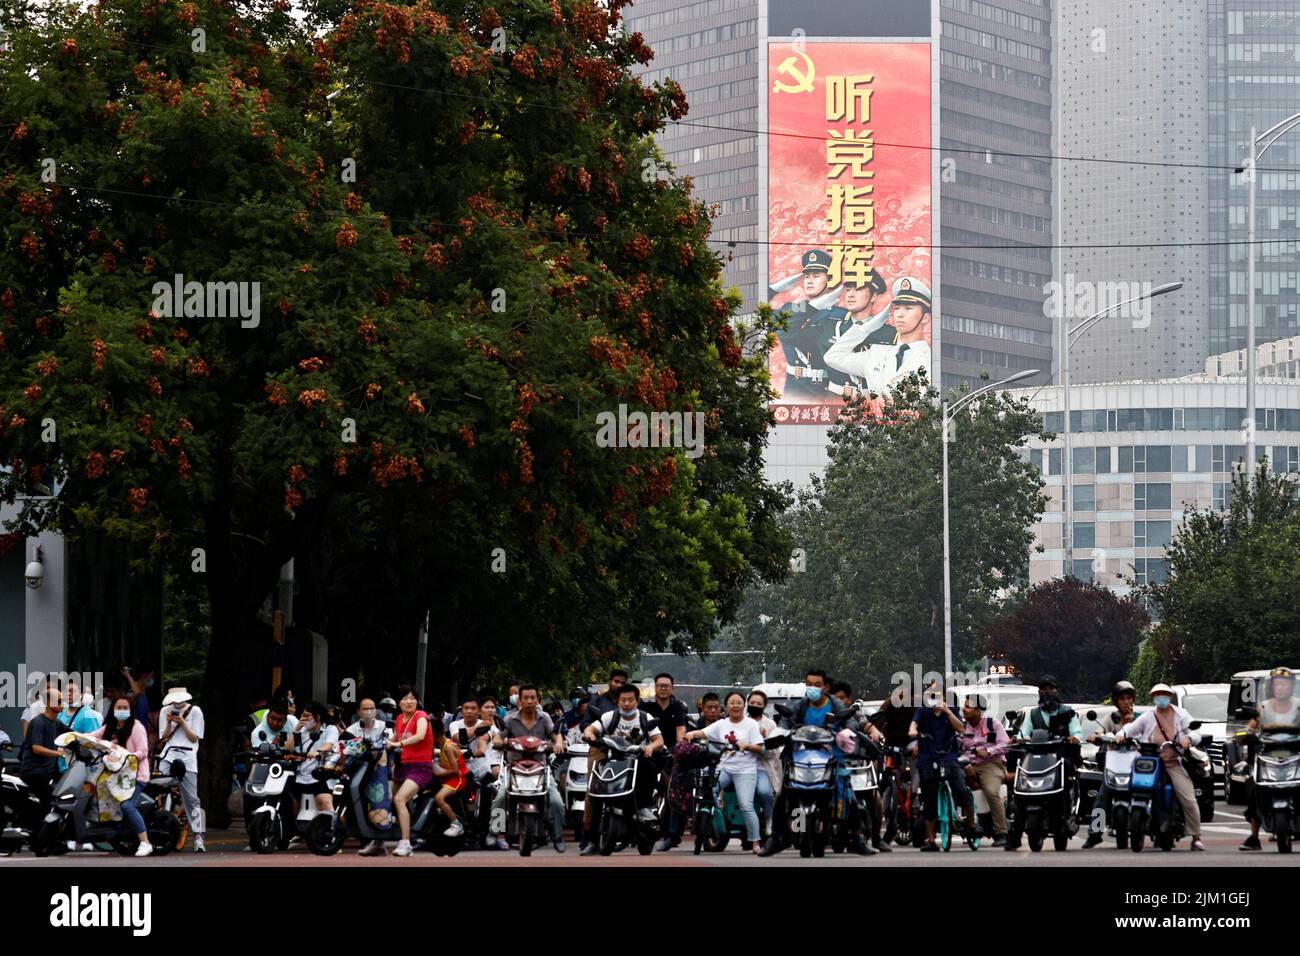 Le persone che guidano veicoli aspettano un incrocio vicino a uno schermo che mostra un'immagine dell'Esercito popolare Cinese di Liberazione (PLA) a Pechino, Cina 4 agosto 2022. REUTERS/Thomas Peter Foto Stock